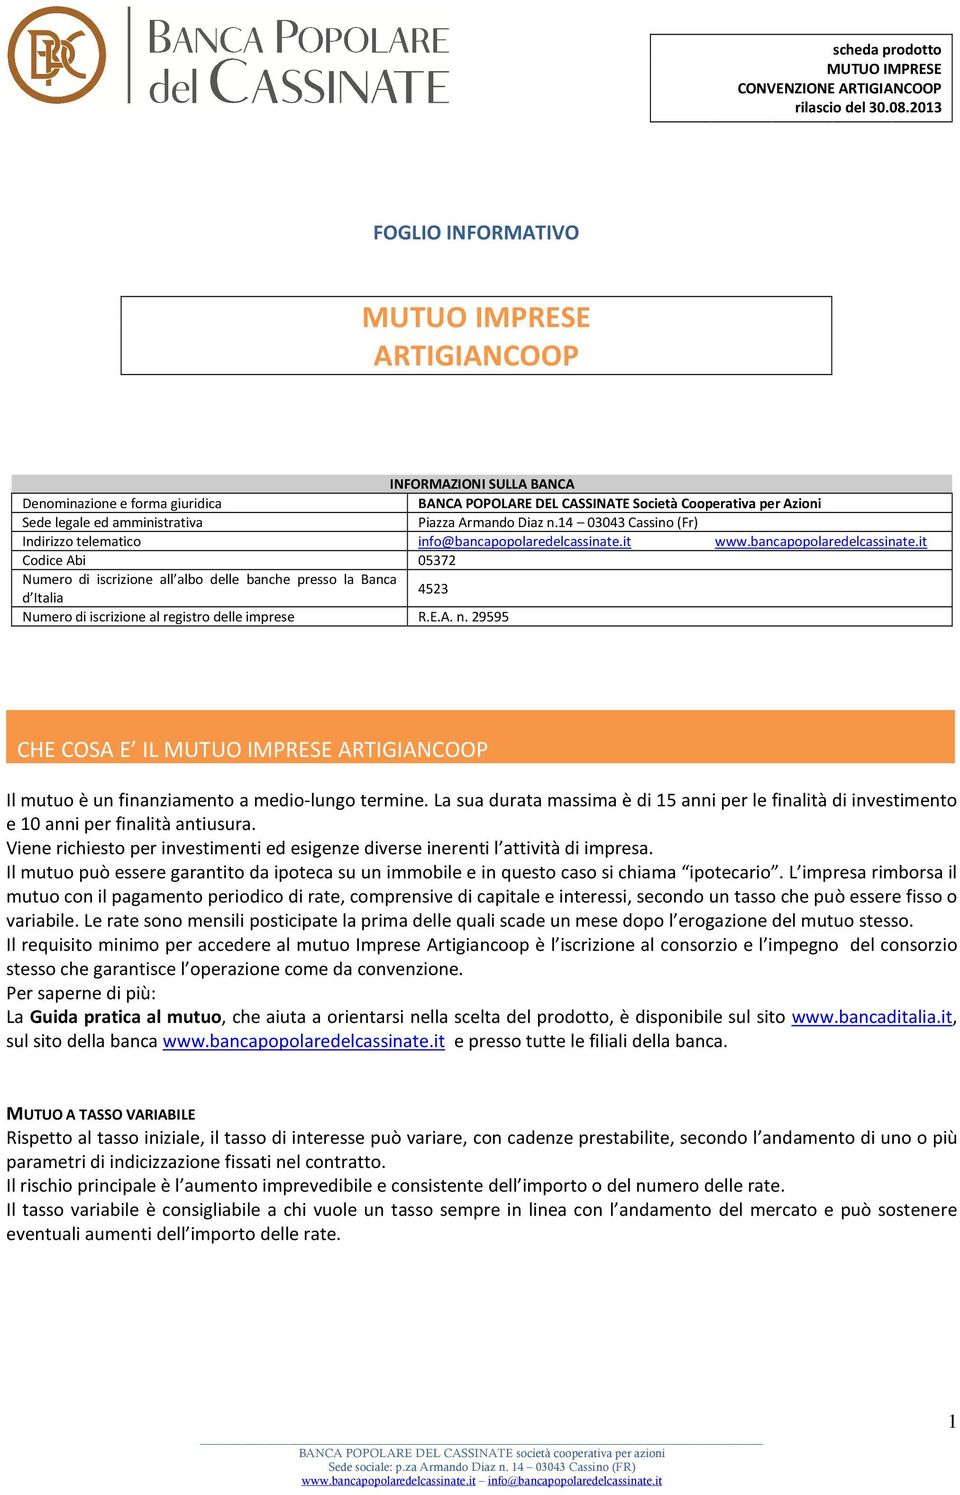 Piazza Armando Diaz n.14 03043 Cassino (Fr) Indirizzo telematico info@bancapopolaredelcassinate.